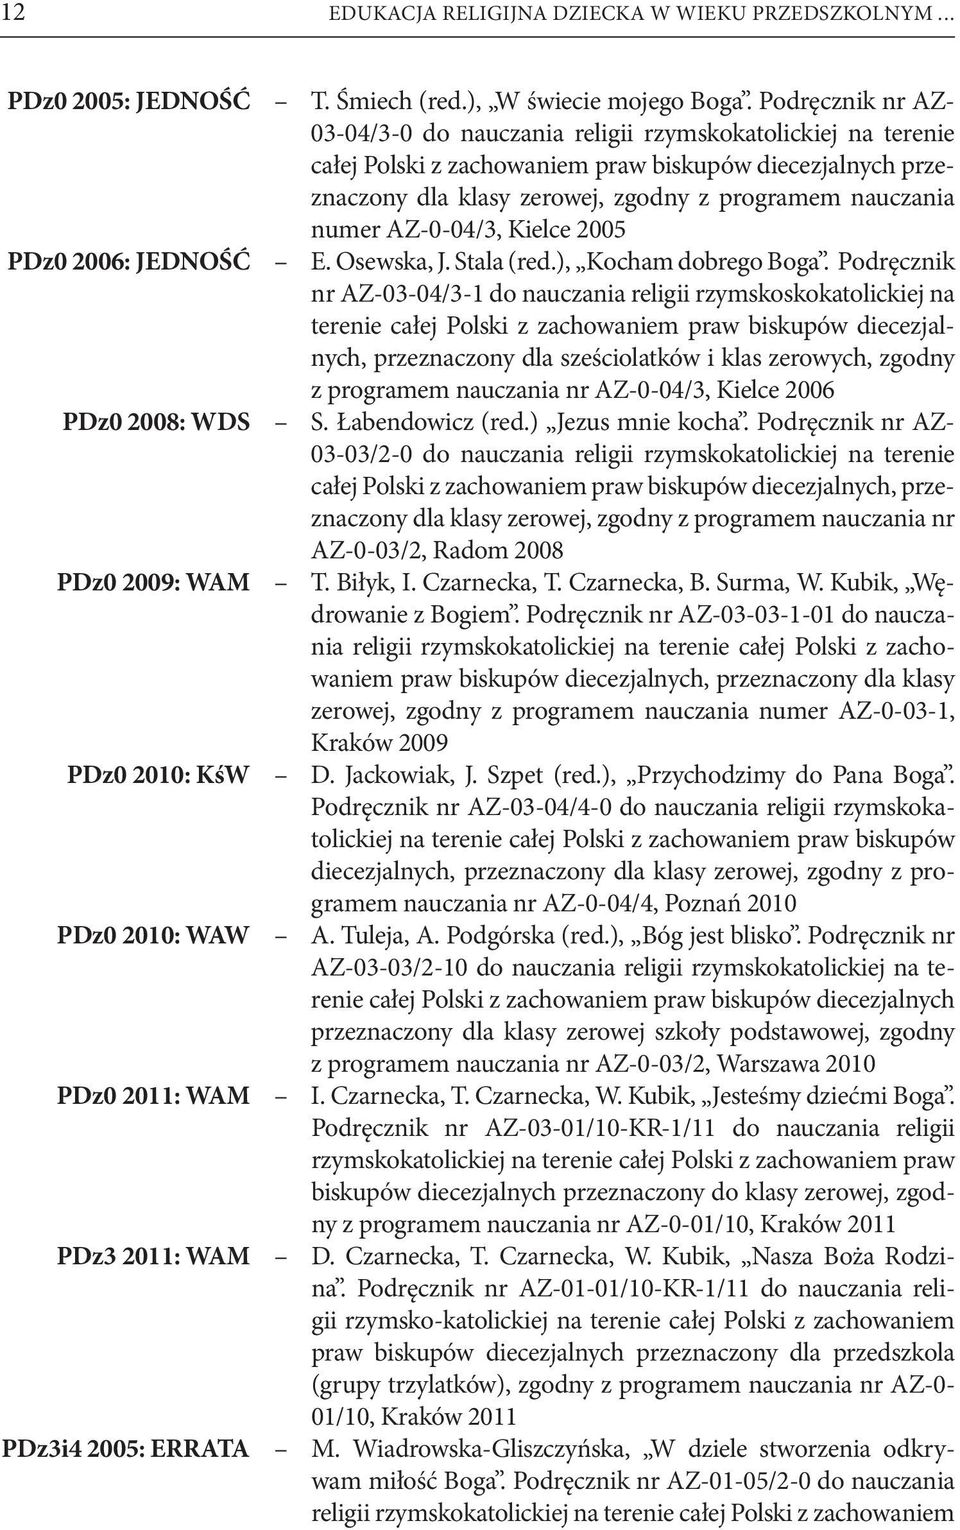 Podręcznik nr AZ- 03-04/3-0 do nauczania religii rzymskokatolickiej na terenie całej Polski z zachowaniem praw biskupów diecezjalnych przeznaczony dla klasy zerowej, zgodny z programem nauczania